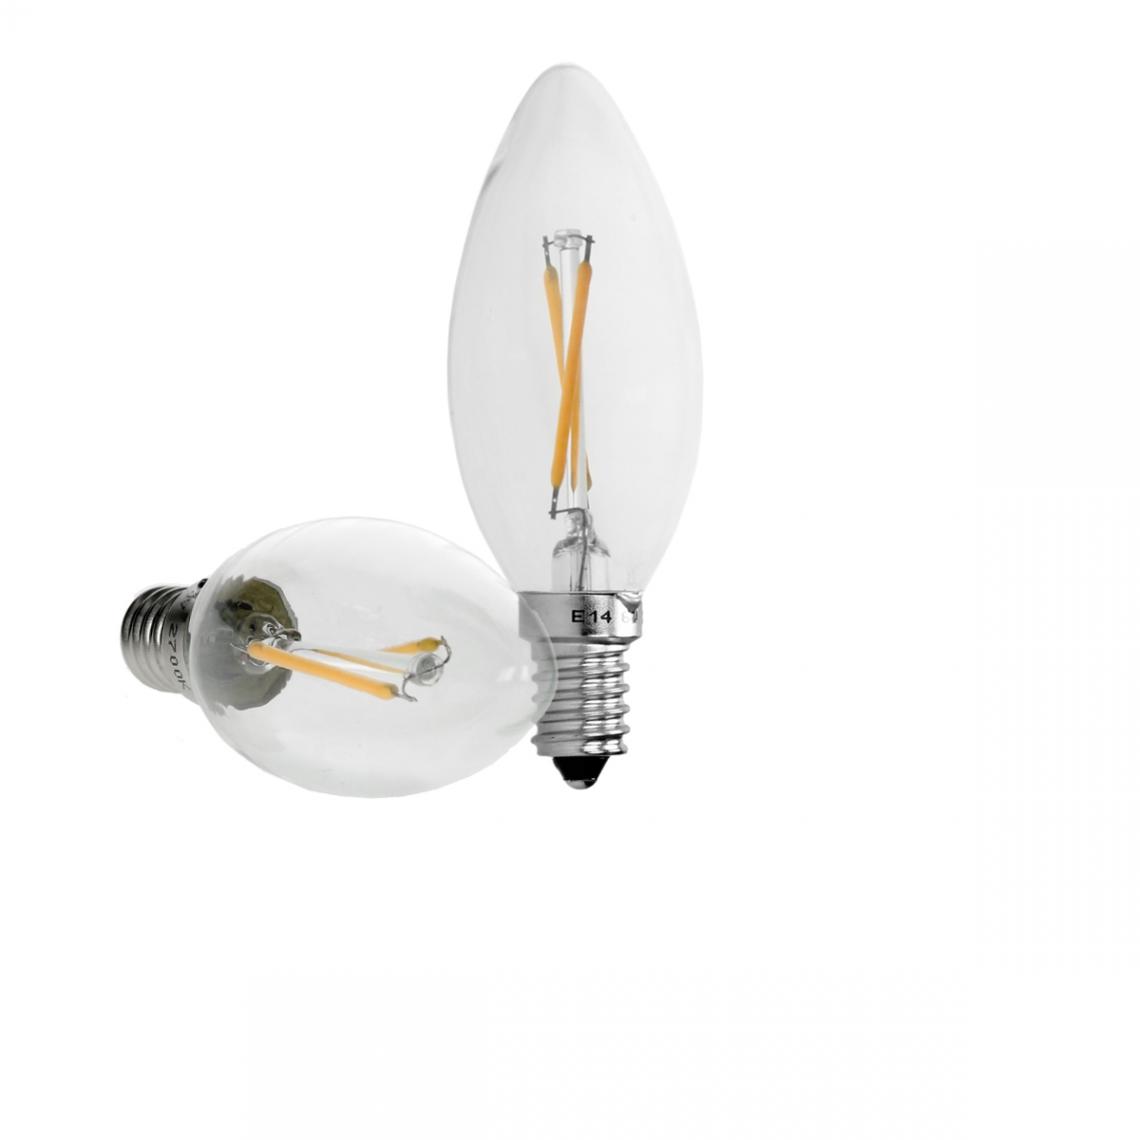 Ecd Germany - ECD Germany 4 x LED Filament de la bougie E14 2W 204 Lumens 120 ° Angle de courant alternatif 220-240 V reste caché et remplace 15W Ampoule de la lampe à incandescence Blanc Chaud - Ampoules LED